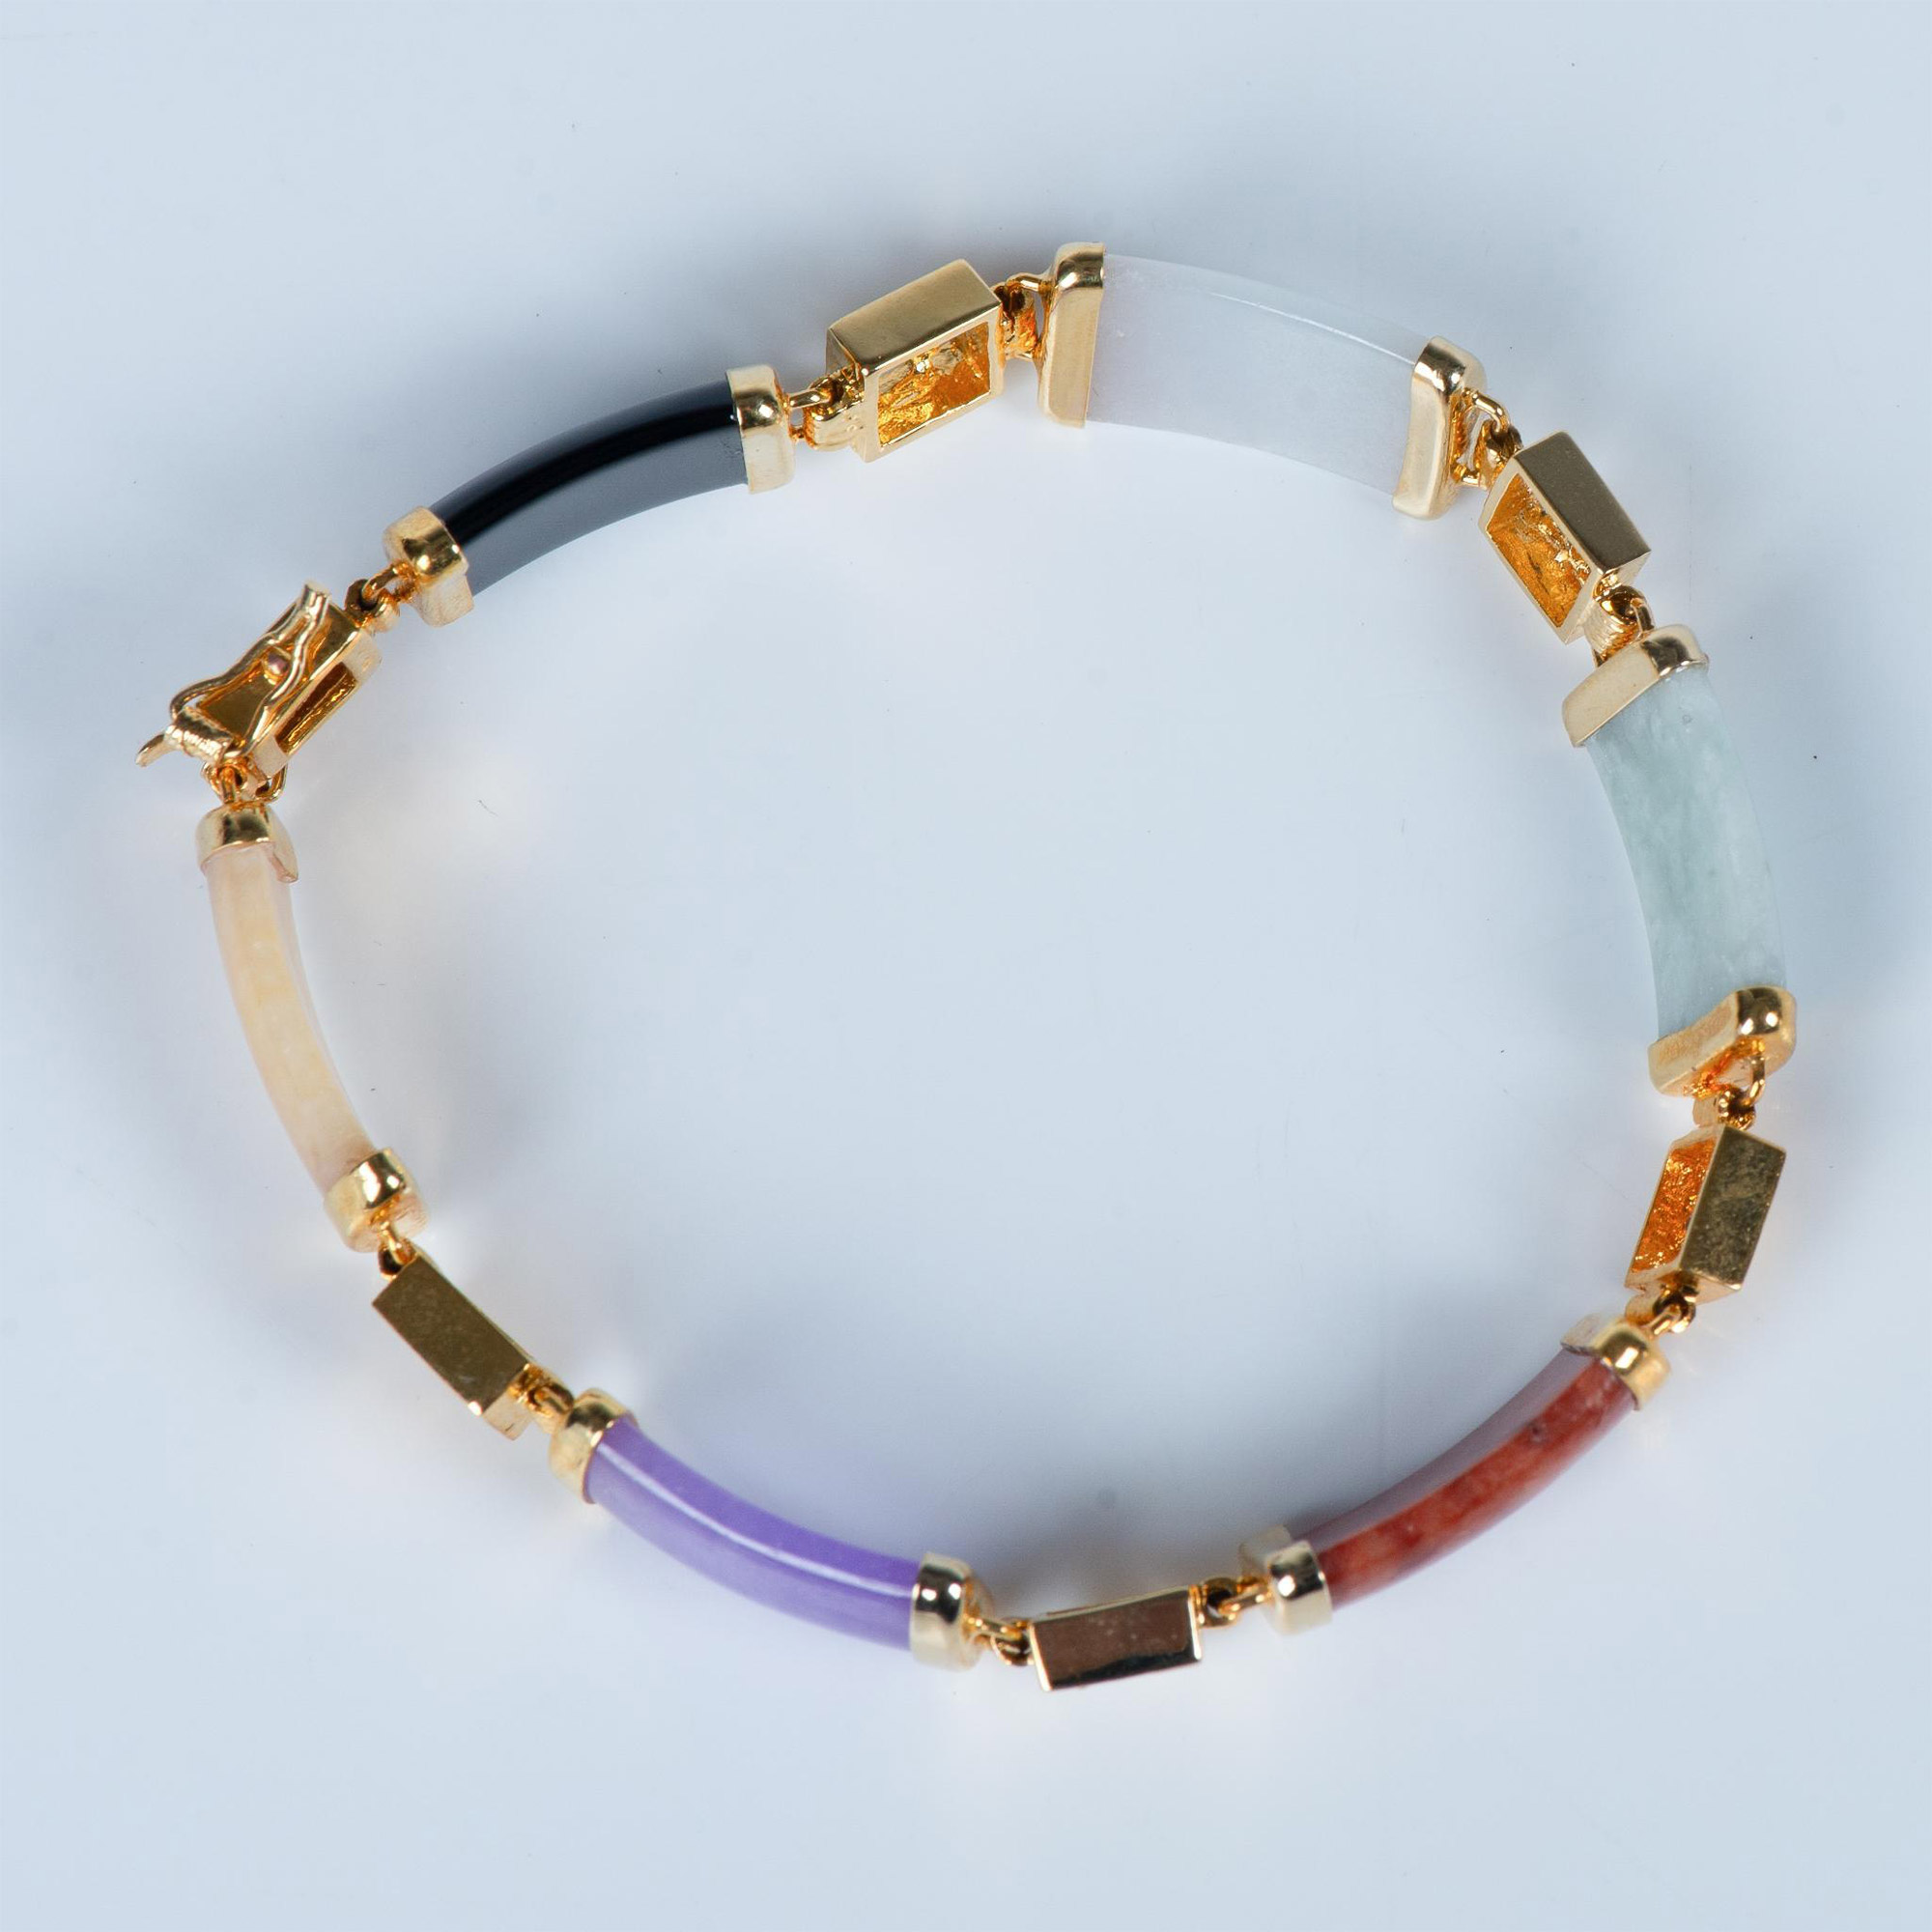 Chinese 14K Gold Multi-Colored Gemstone Bracelet - Image 5 of 7